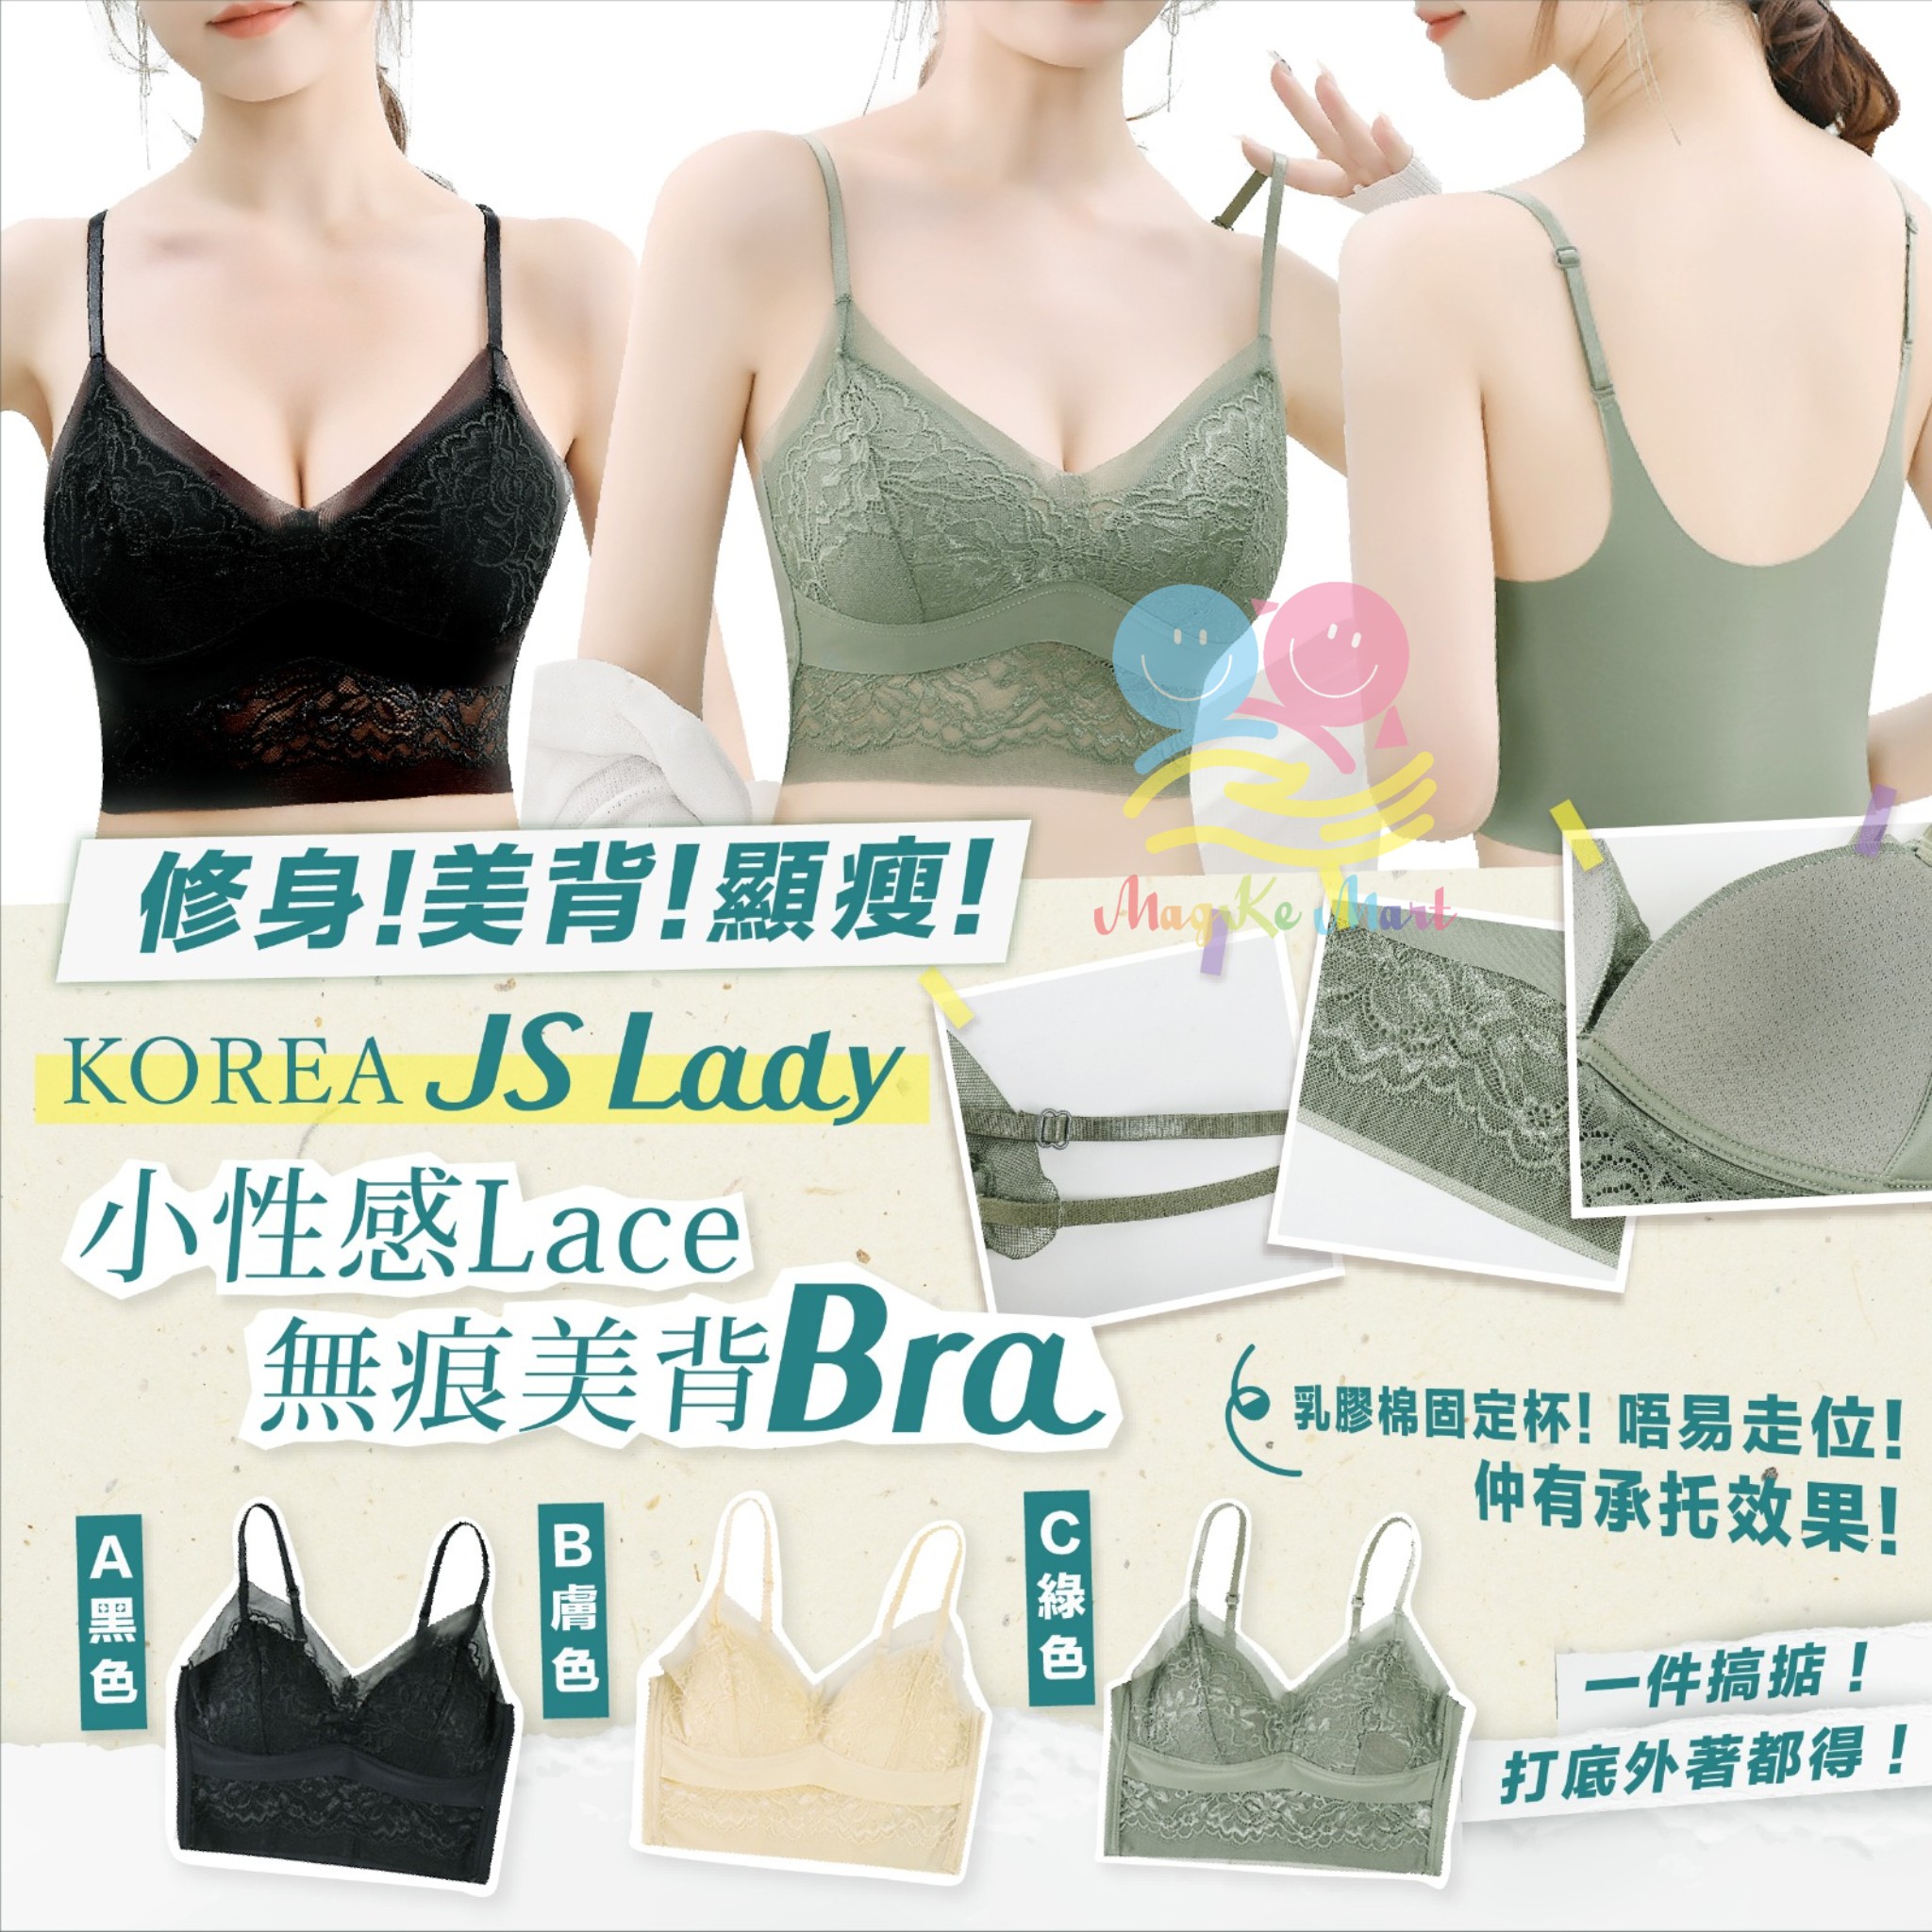 韓國 JS Lady 小性感Lace無痕吊帶美背bra